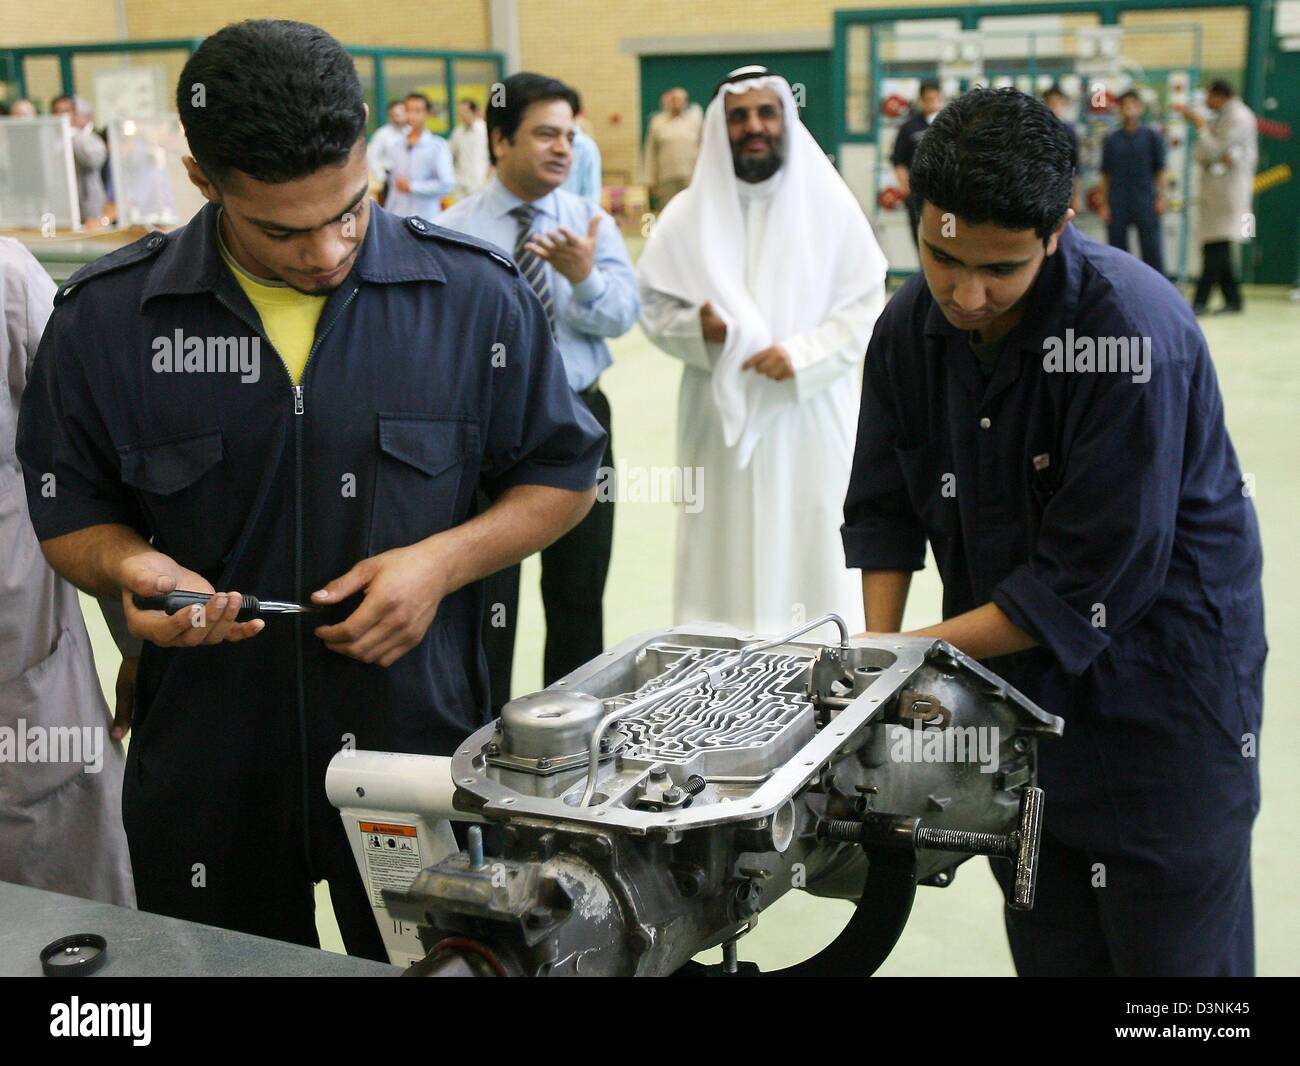 Les apprentis travaillent sur un pignon de la voiture dans le cadre de la formation professionnelle par la GTZ (société allemande de coopération technique) dans la ville de Koweït, Koweït, dimanche 21 mai 2006. Photo : Tim Brakemeier Banque D'Images